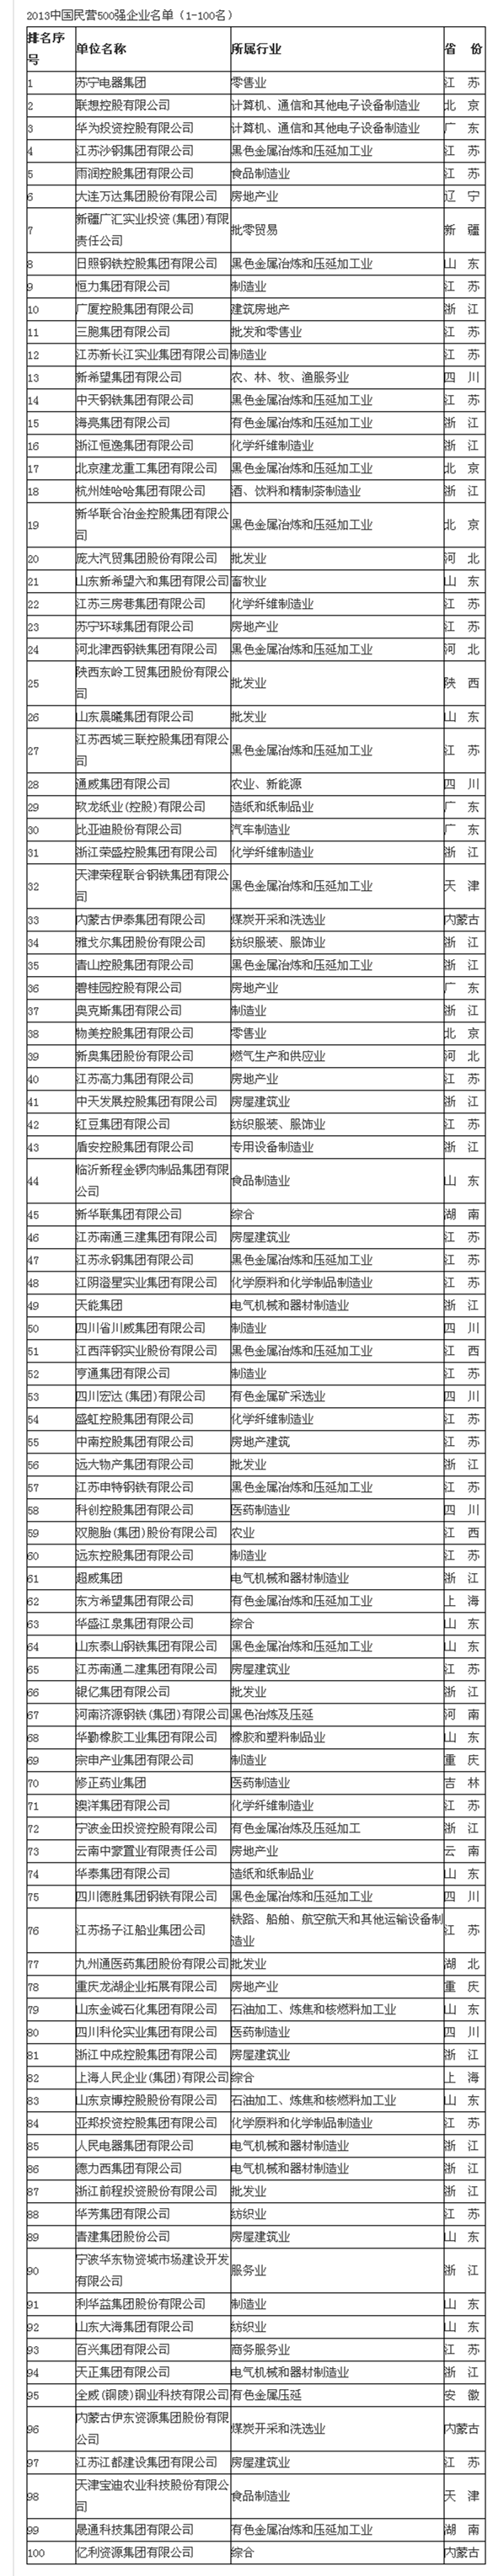 2013中国民营500强企业名单:浙江137企业上榜